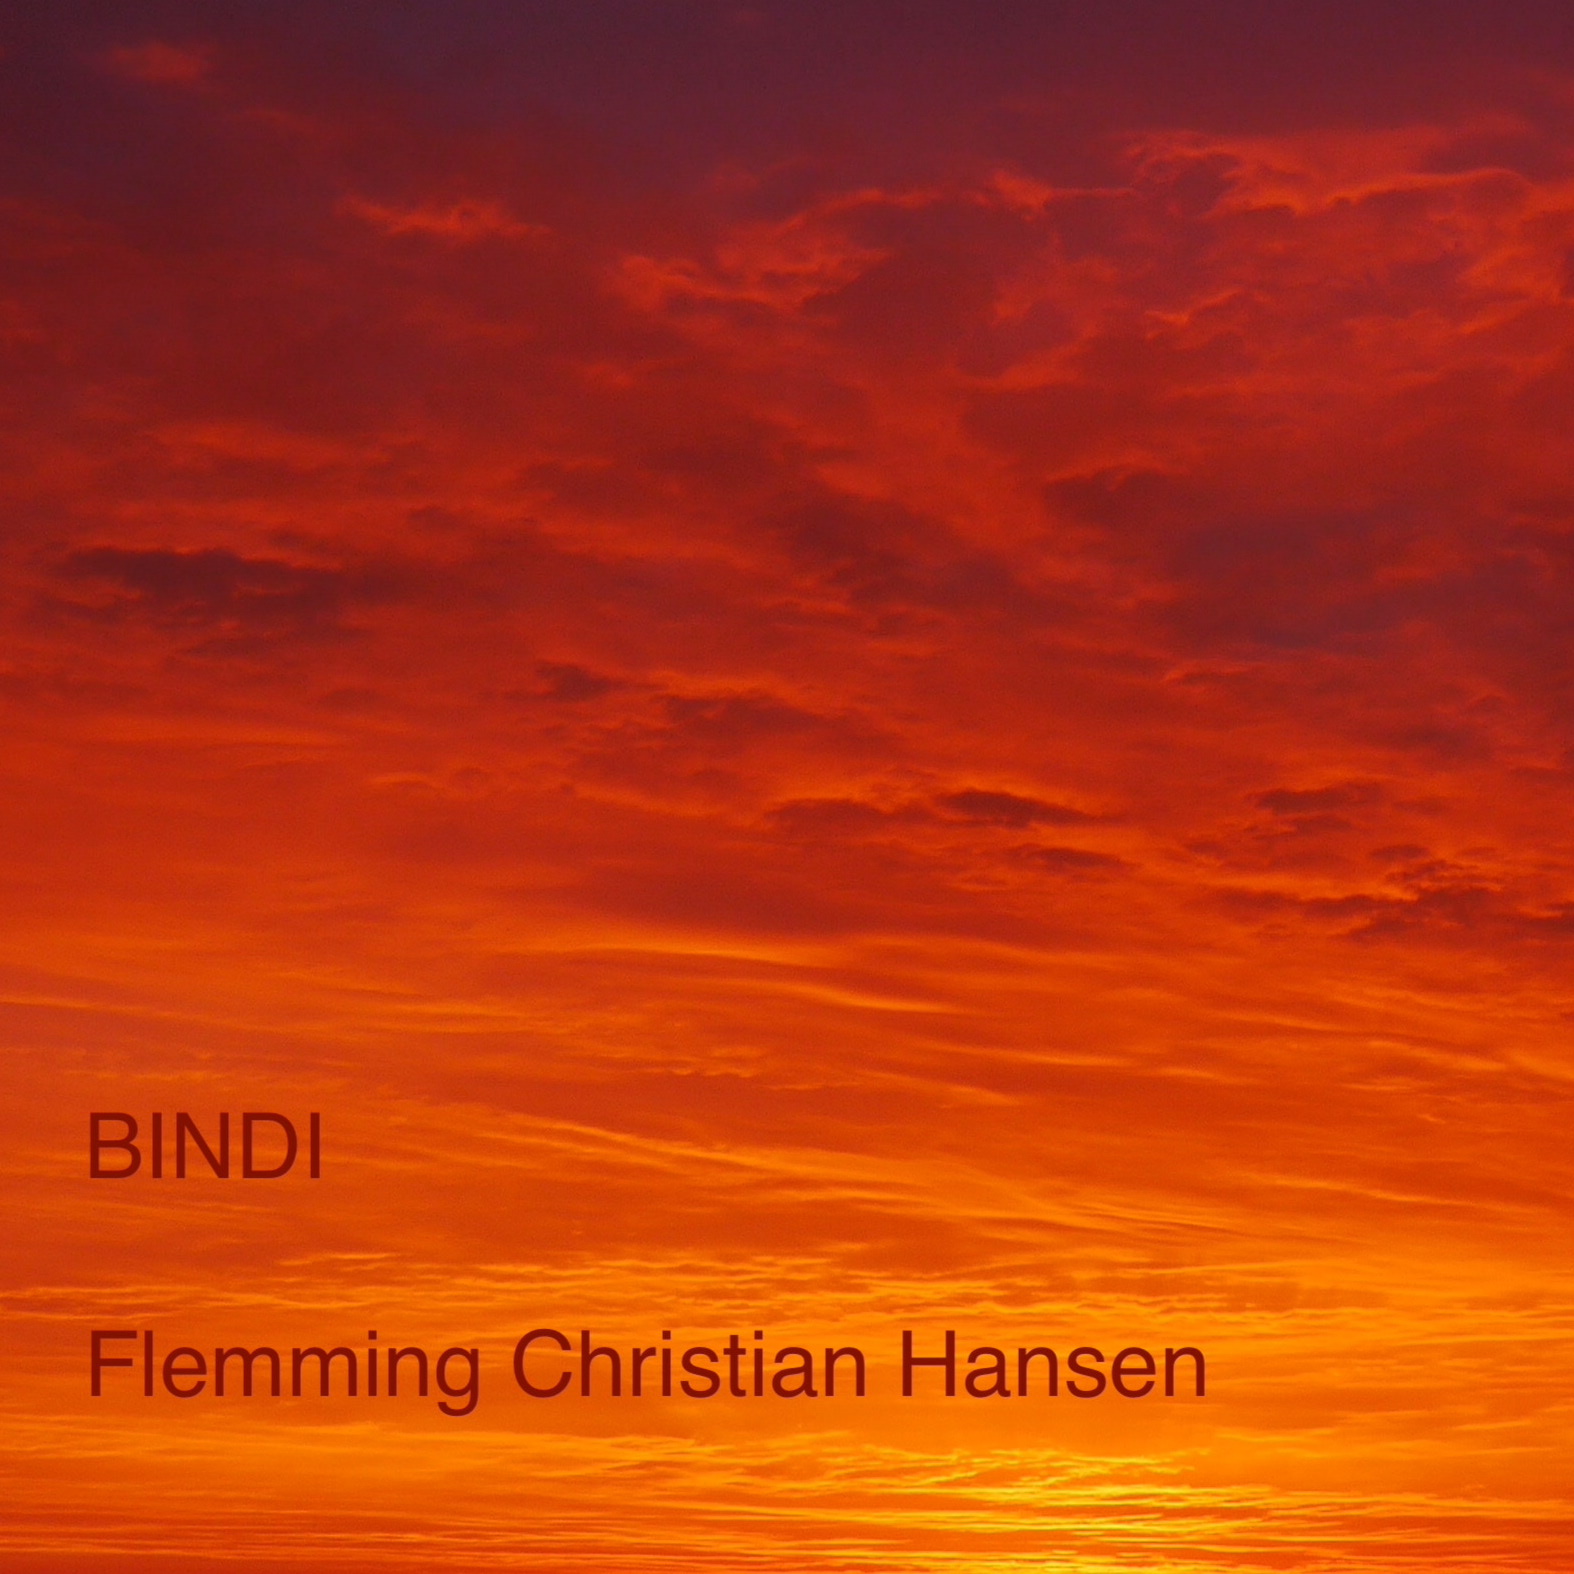 album cover, sunset